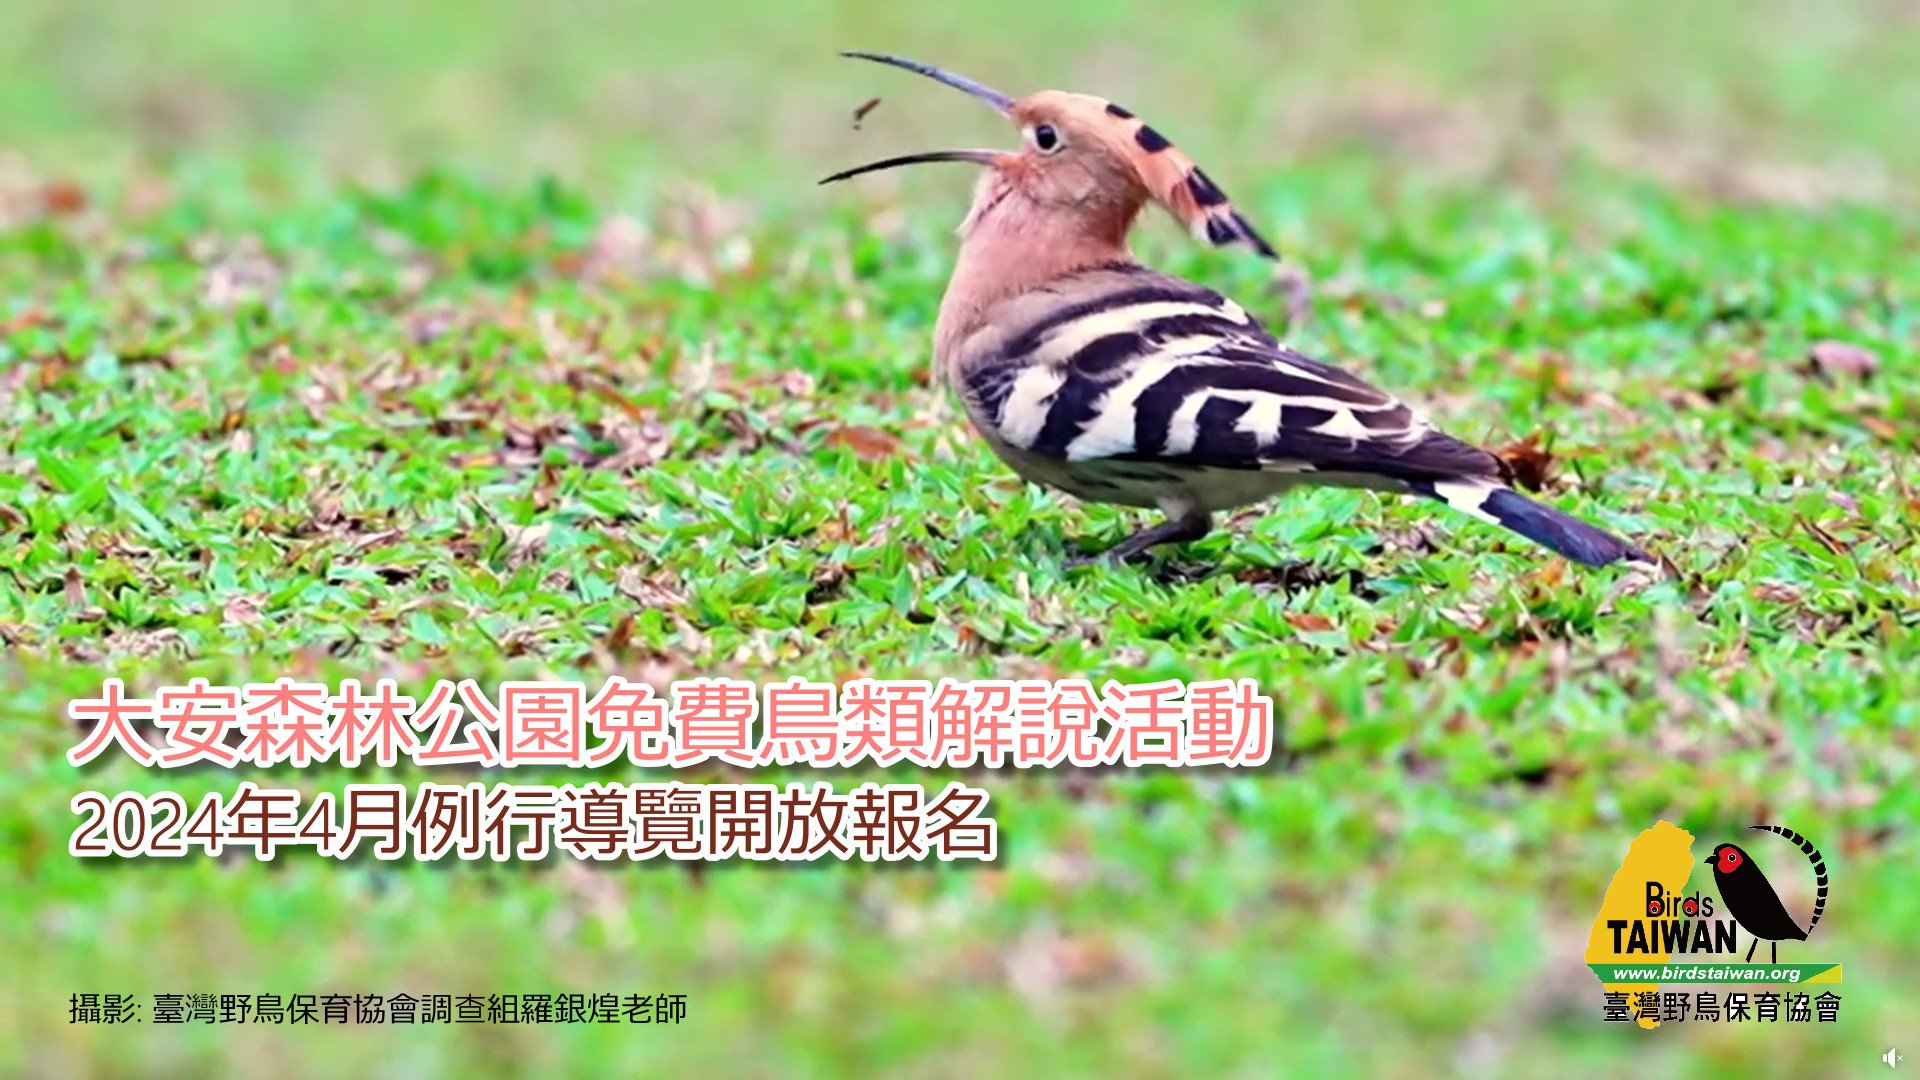 大安森林公園免費鳥類解說活動 臺灣野鳥保育協會 2024年4月例行導覽開放報名